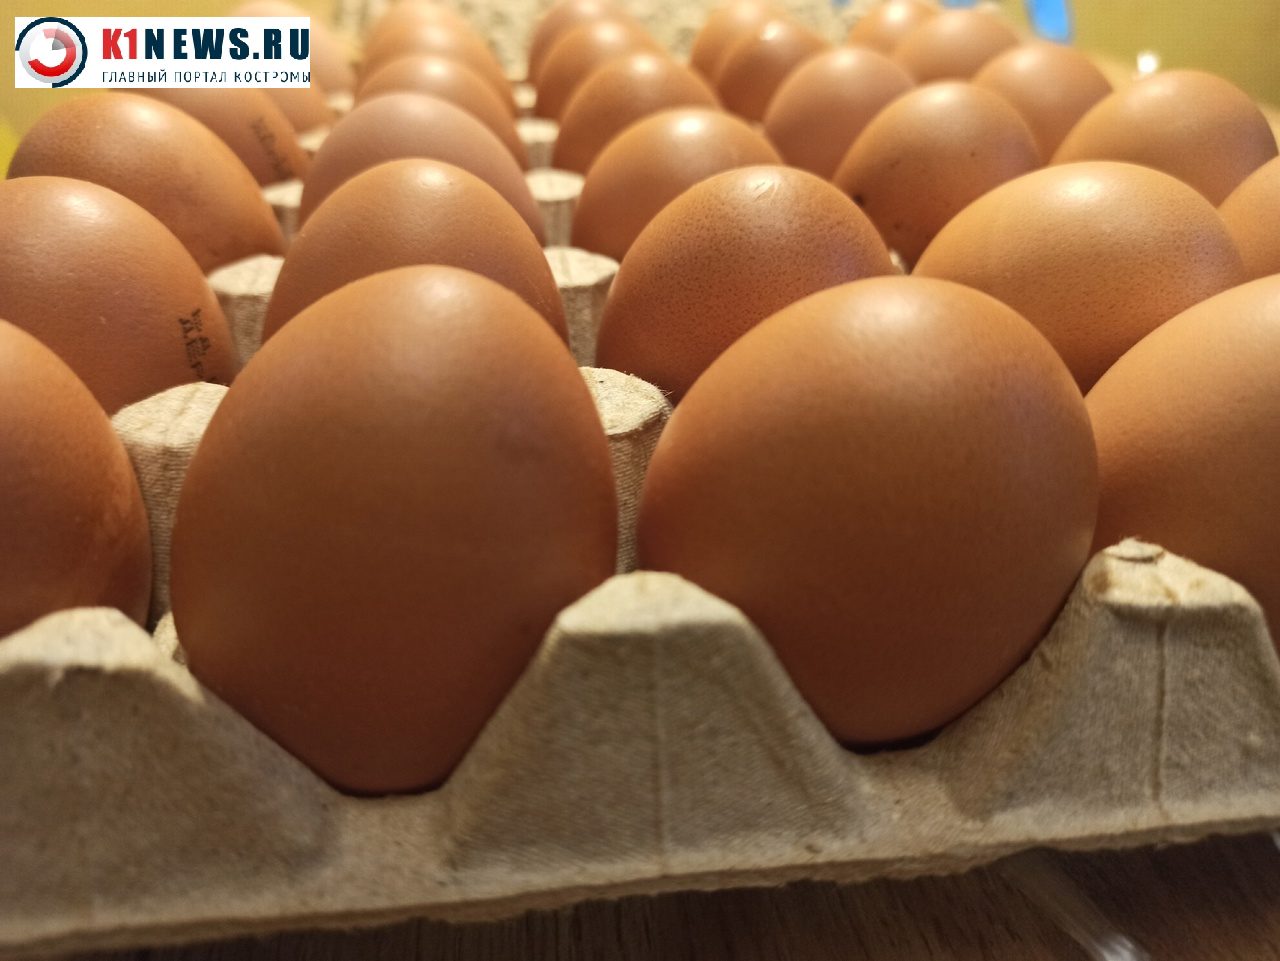 Костромских производителей яиц подозревают в антимонопольных нарушениях